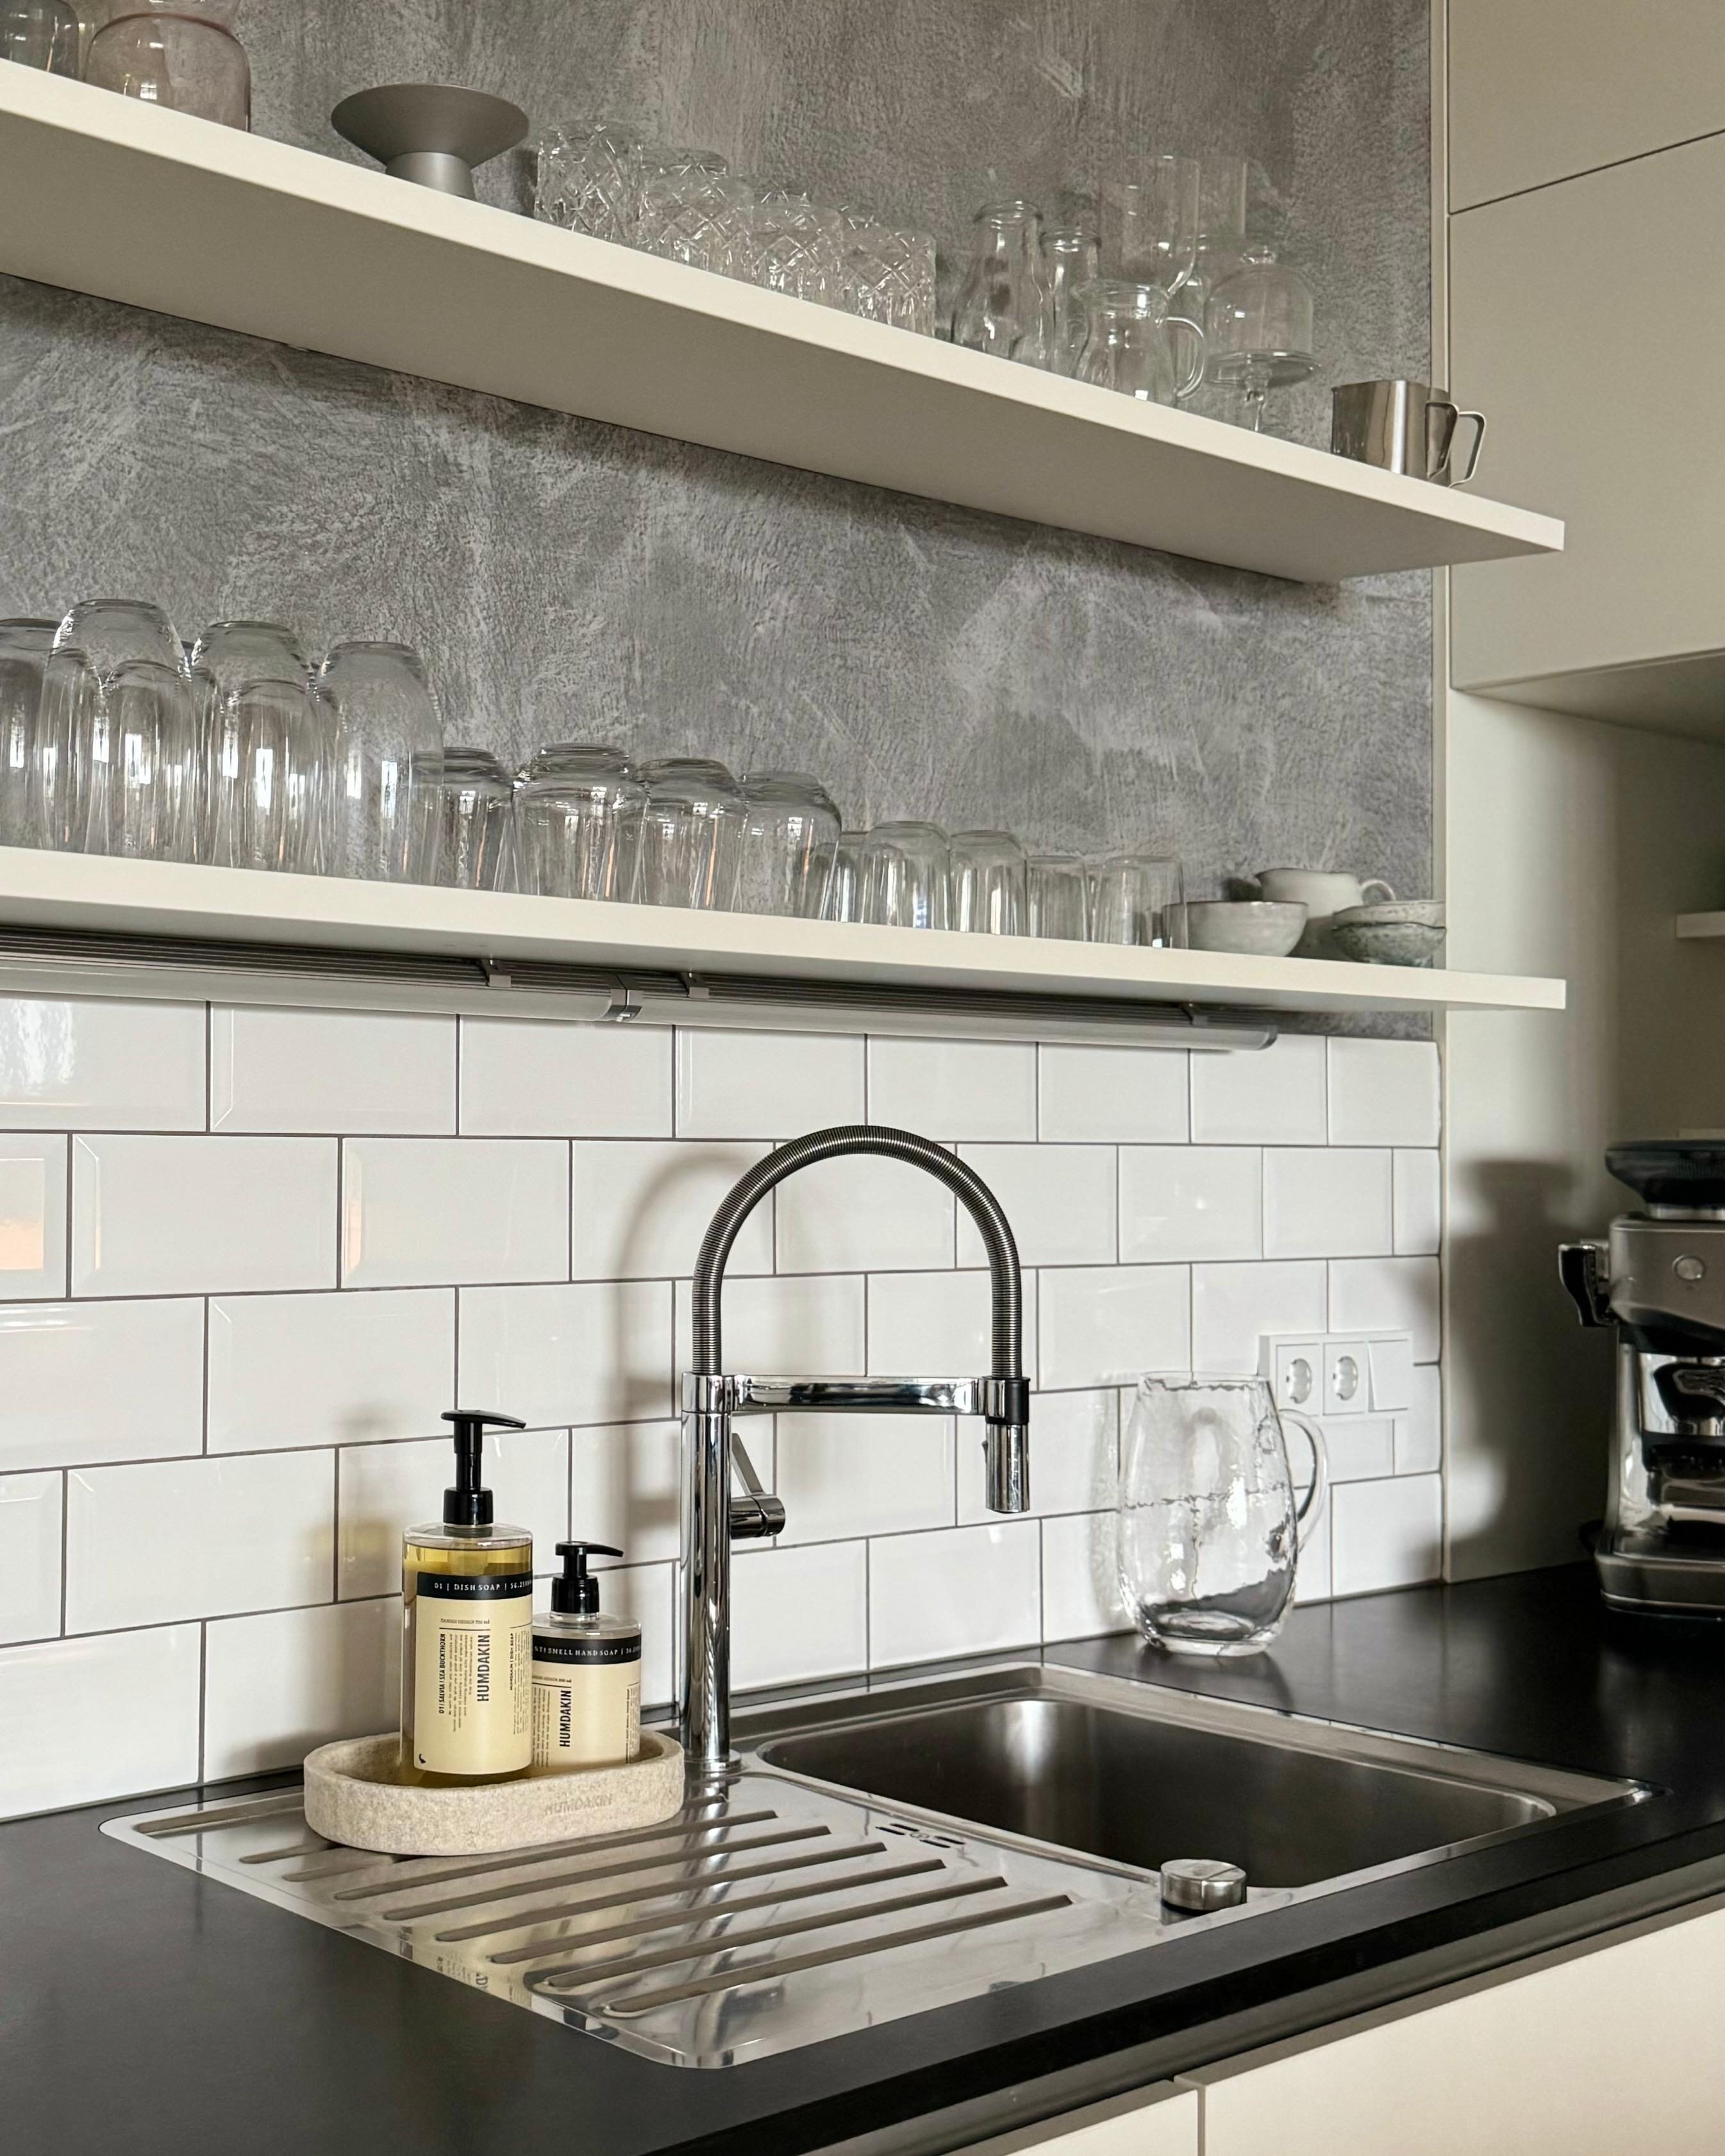 Kitchendetails 🤍🩶🤎🖤

#küche #küchendetails #industrial #metrofliesen #chrom #seife #spülmittel #stein #glas #beton #sichtbeton #granit 